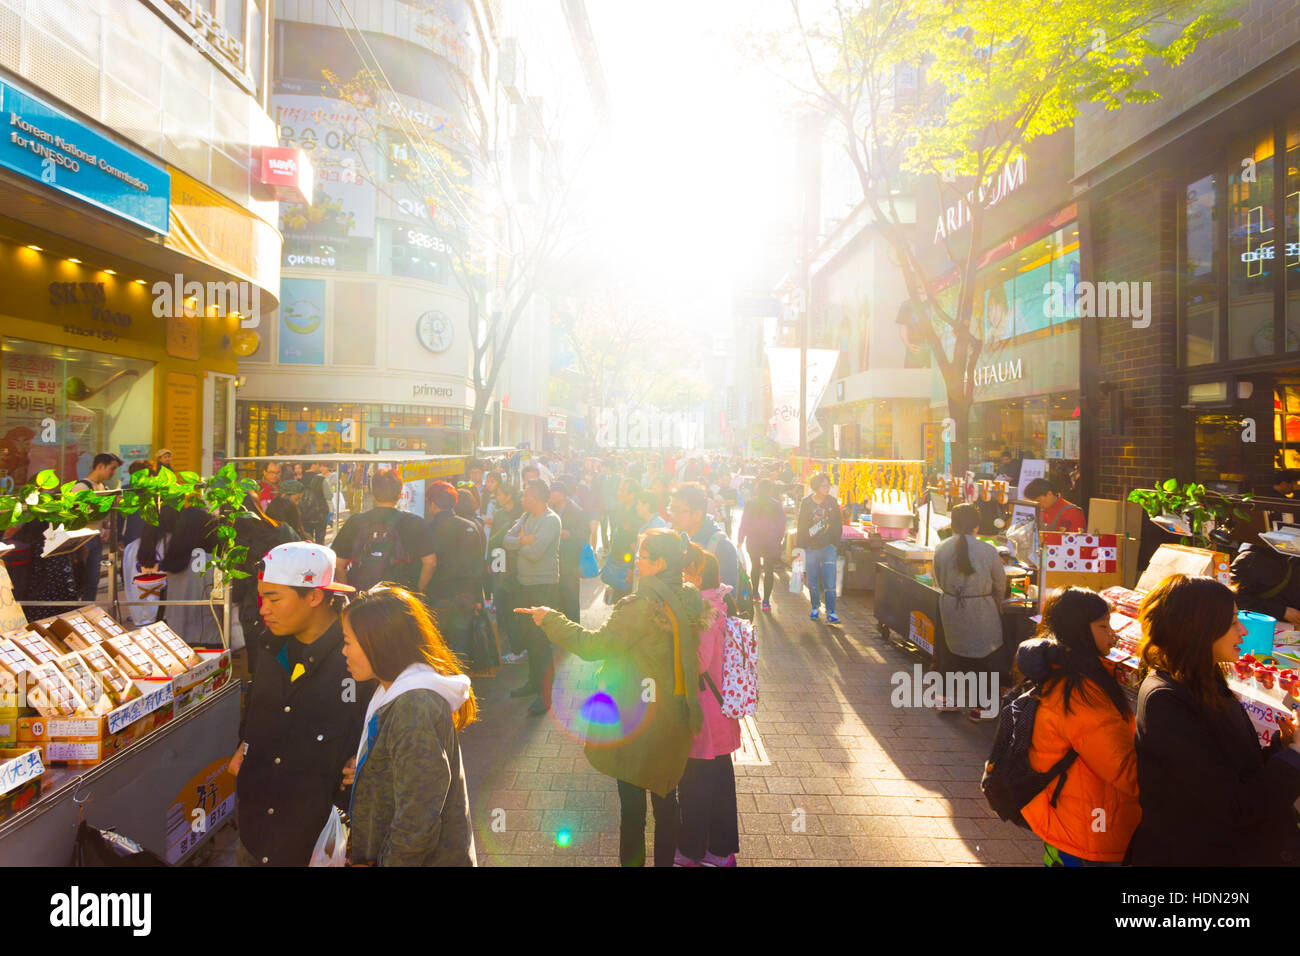 Les rétroéclairages soleil touristes marcher dans rue piétonne commerçante Myeongdong occupé avec l'aspect commercial de magasins, de signes et de monde Banque D'Images